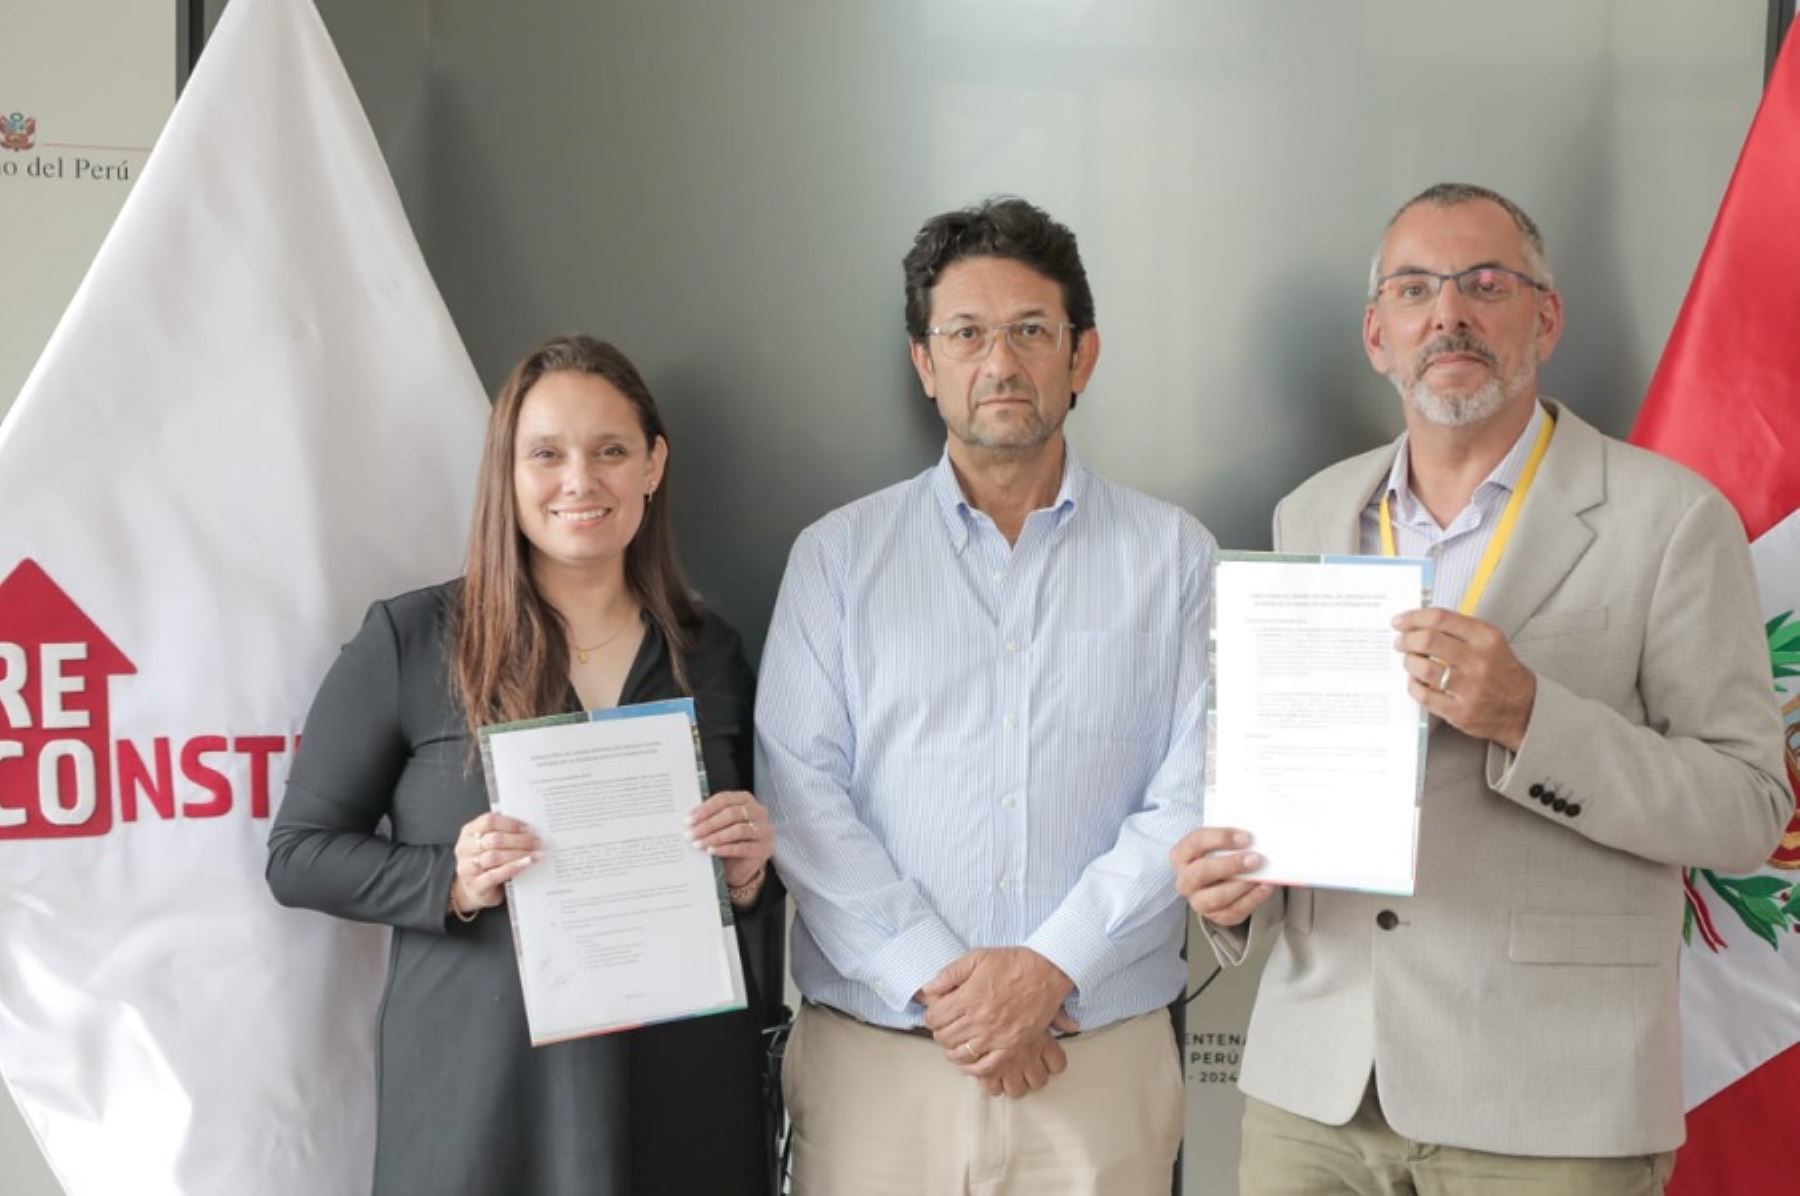 La Autoridad para la Reconstrucción con Cambios (ARCC) firmó un contrato para el diseño del drenaje pluvial de la ciudad de Chiclayo -región Lambayeque- que protegerá a más de 284 mil habitantes frente a las inundaciones generadas de lluvias torrenciales.